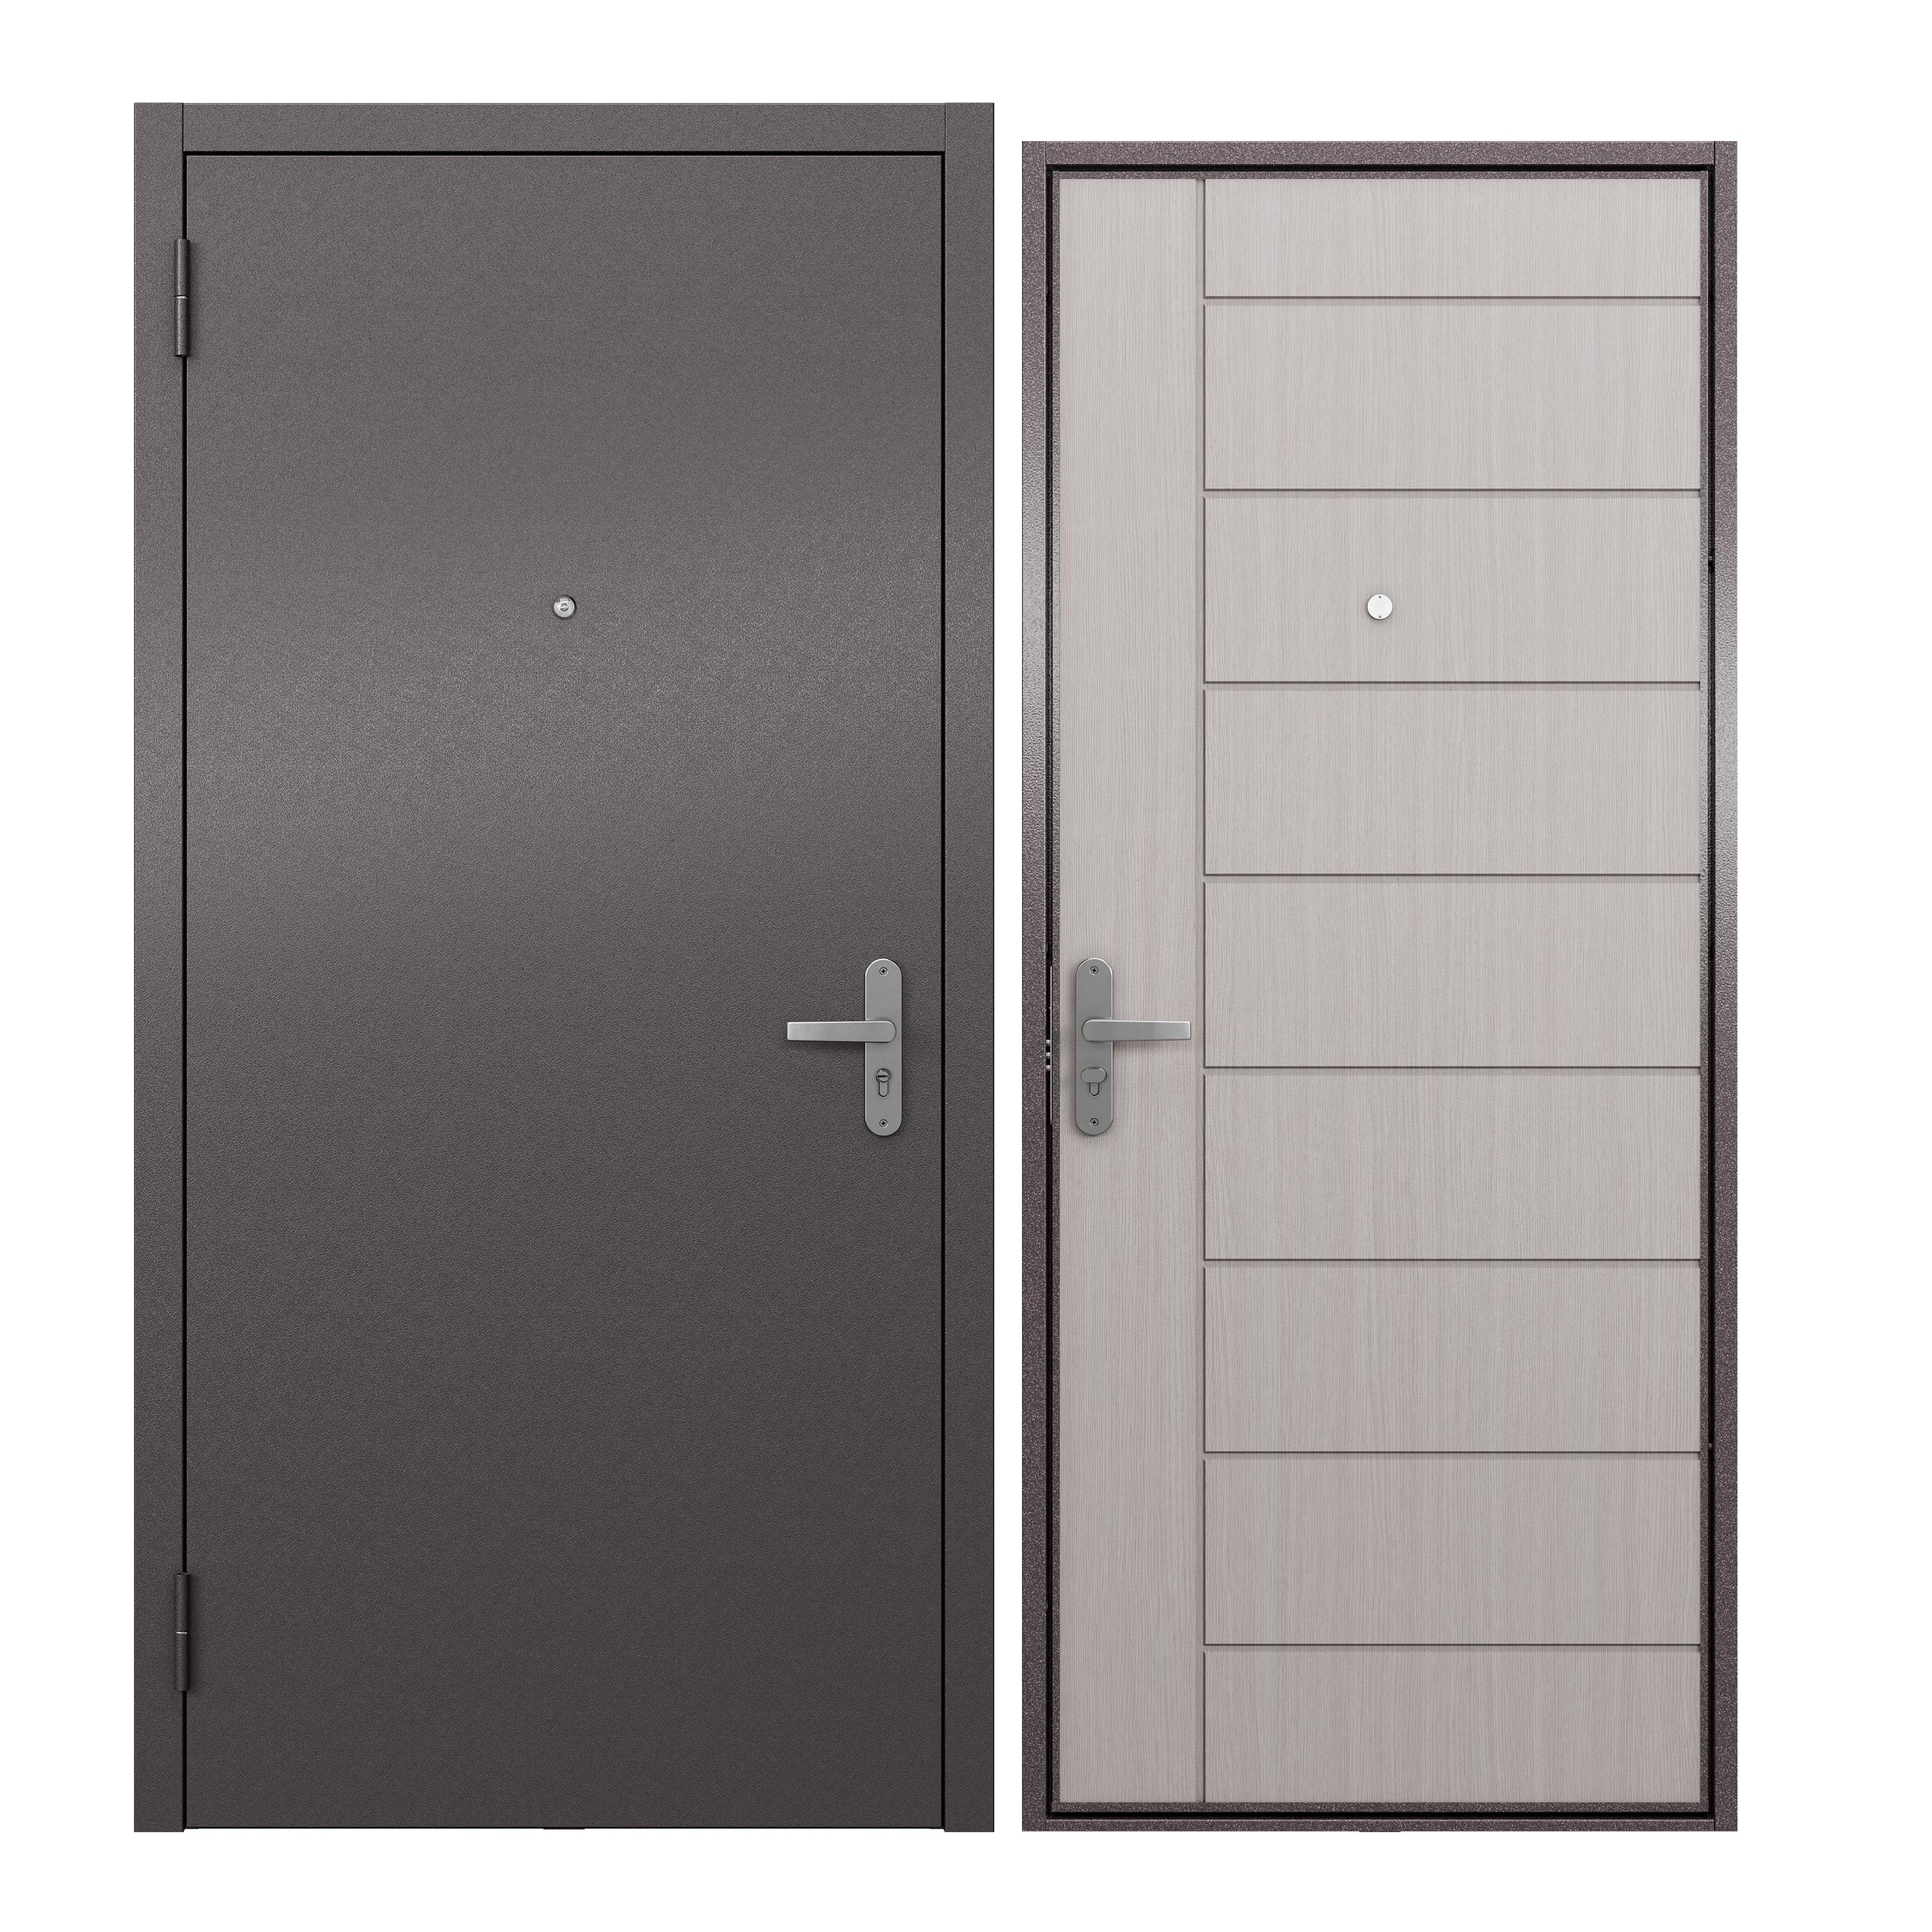 Дверь входная для квартиры ProLine металлическая Terminal A 860х2050, левая, белый дверь входная buldoors вилд левая букле шоколад букле шоколад 860х2050 мм